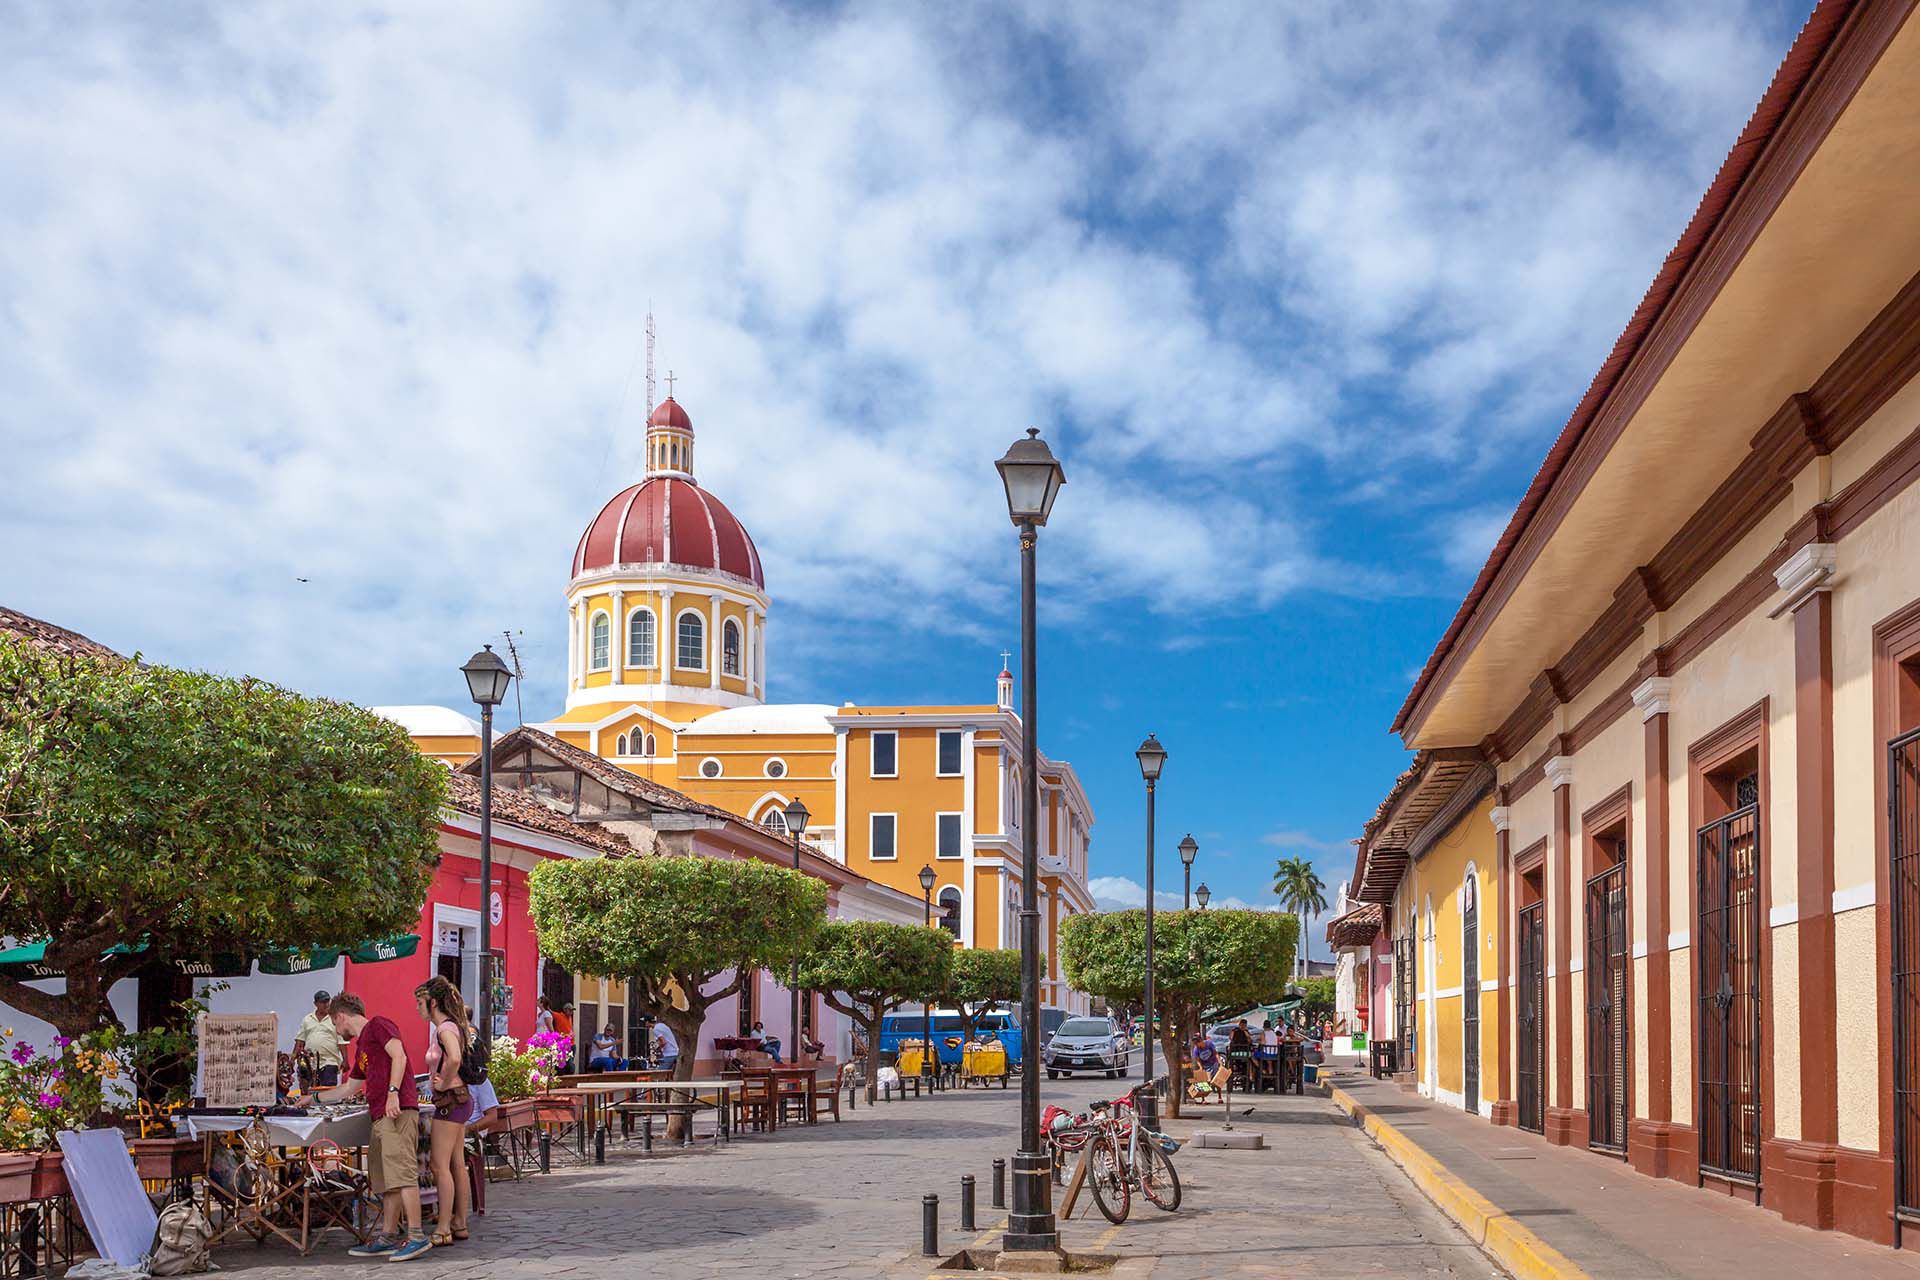 Nicaragua abraza a los viajeros con diversas ofertas de paisajes volcánicos, arquitectura colonial, playas sensacionales, islas remotas e idílicas, playas del Pacífico azotadas por las olas y bosques vírgenes